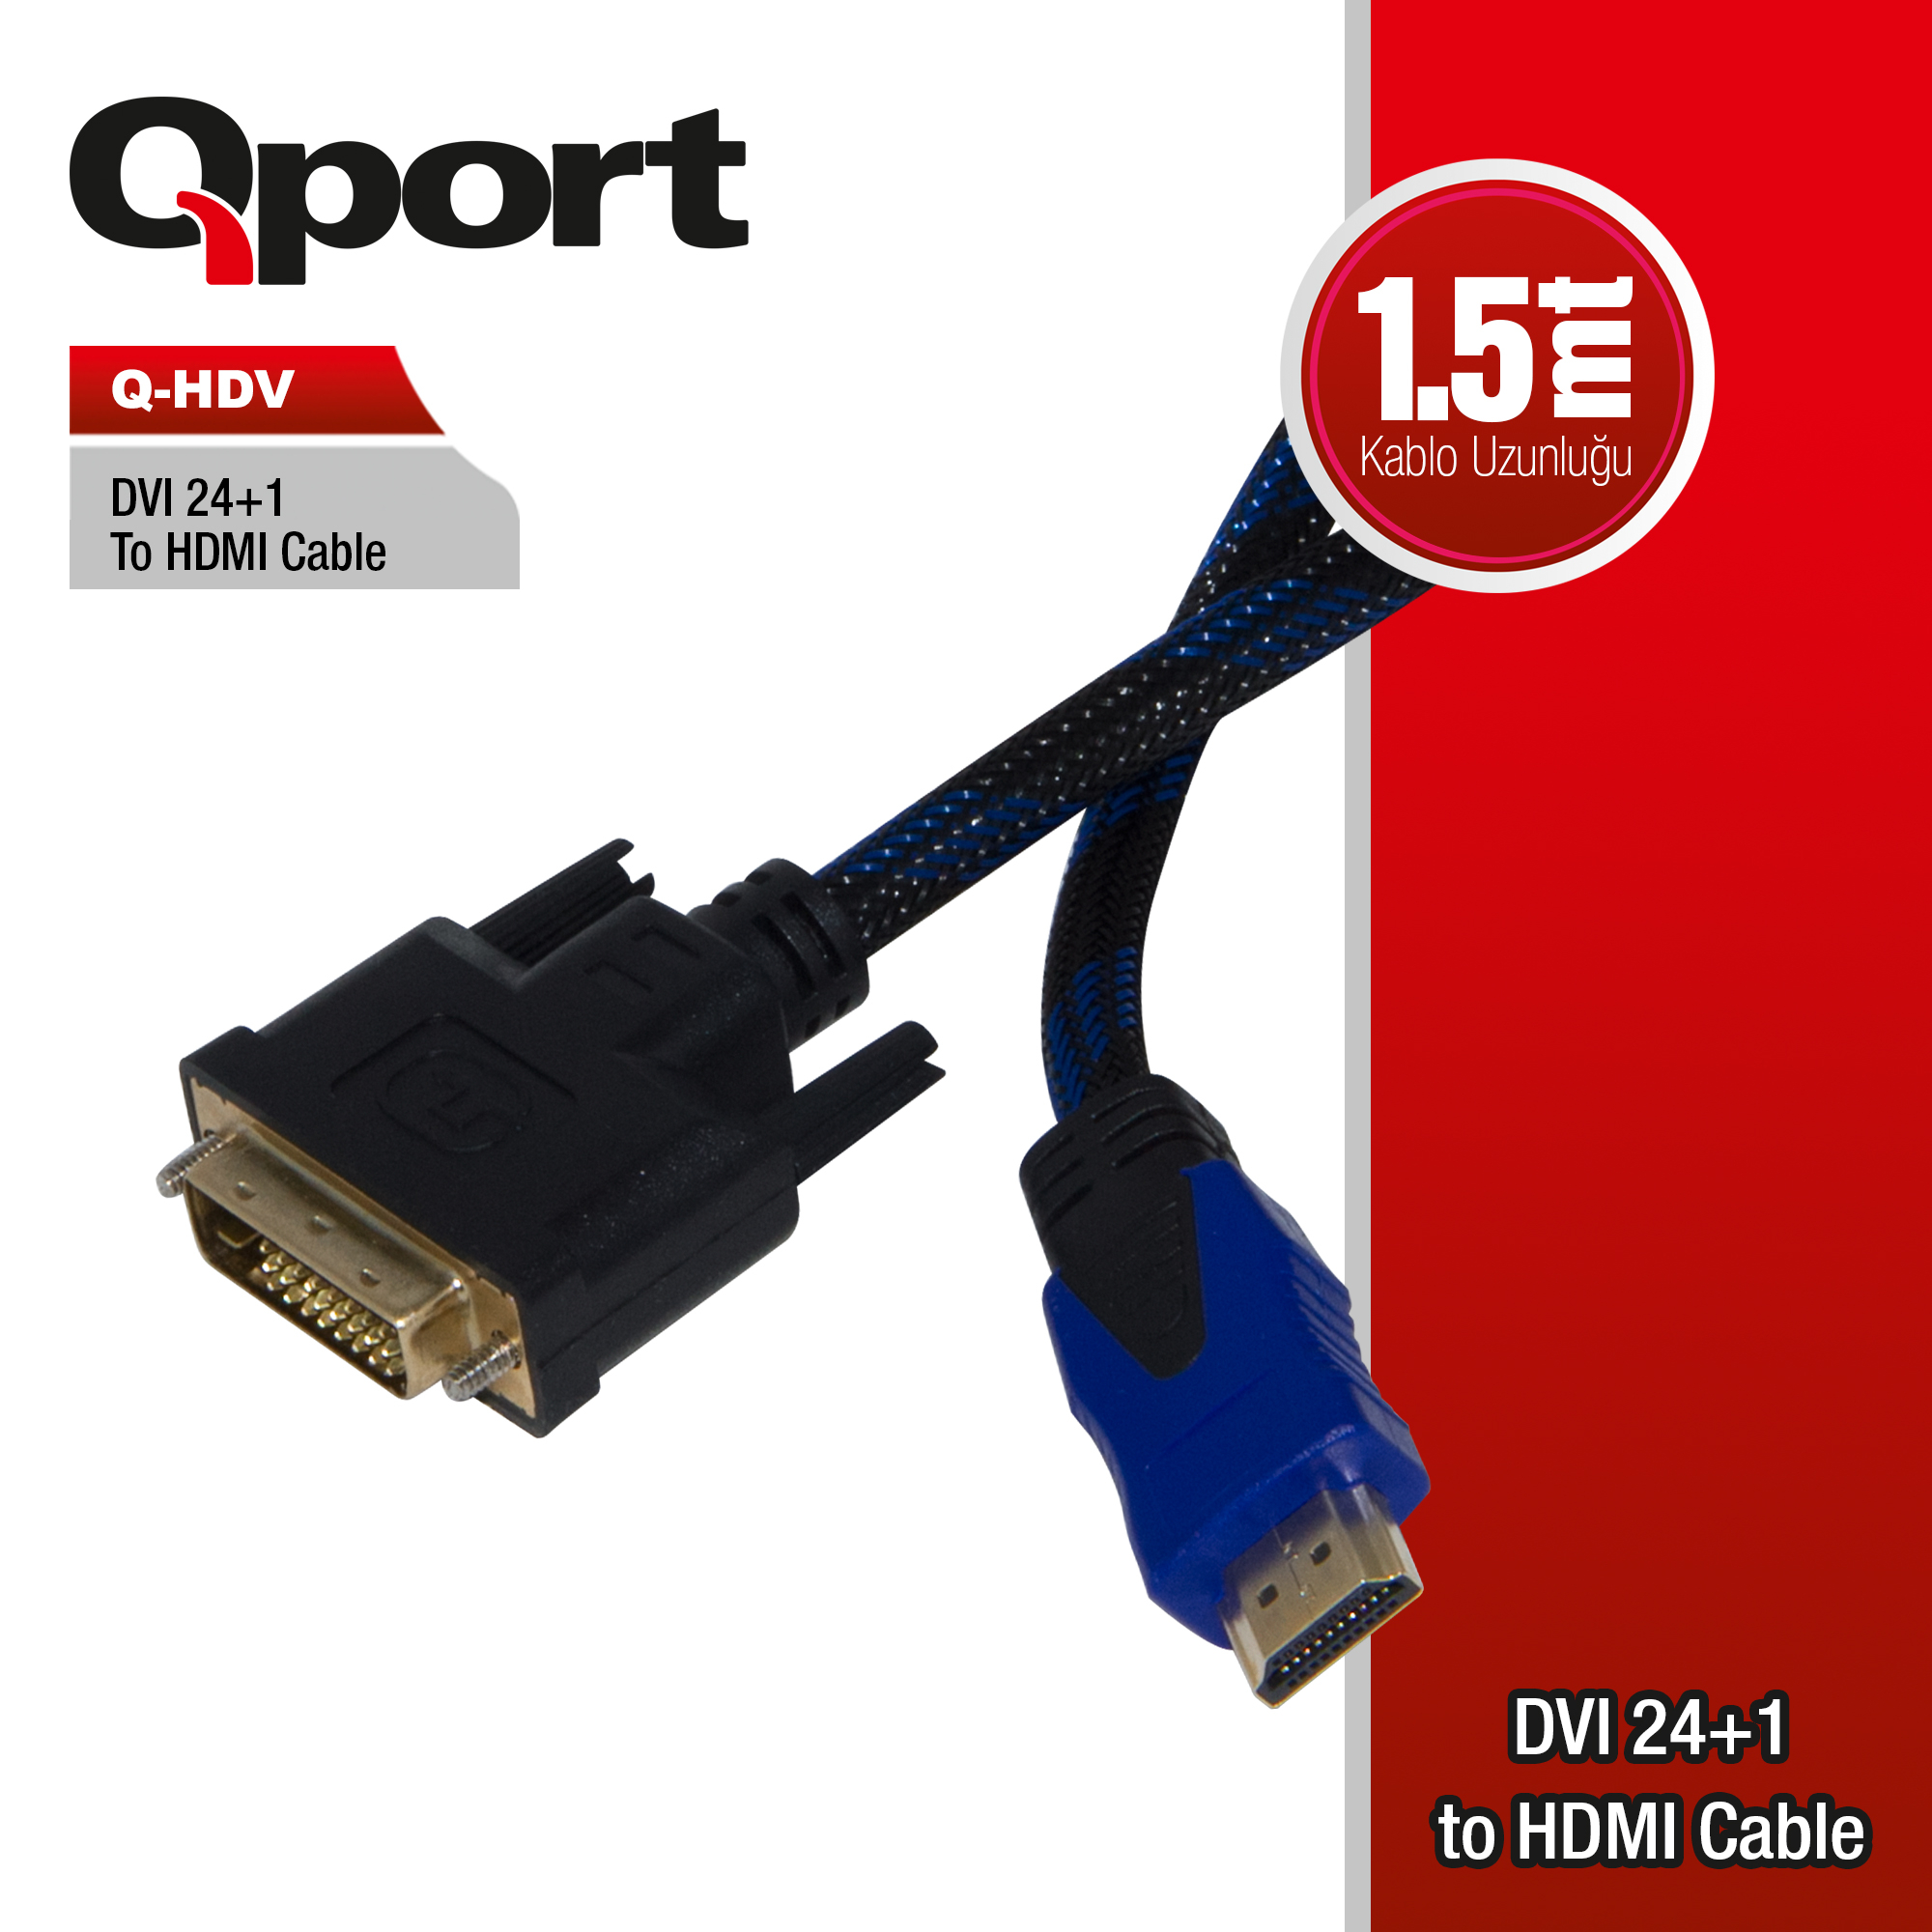 QPORT Q-HDV DVI TO HDMI 24+1 CONVERTER ÇEVİRİCİ 